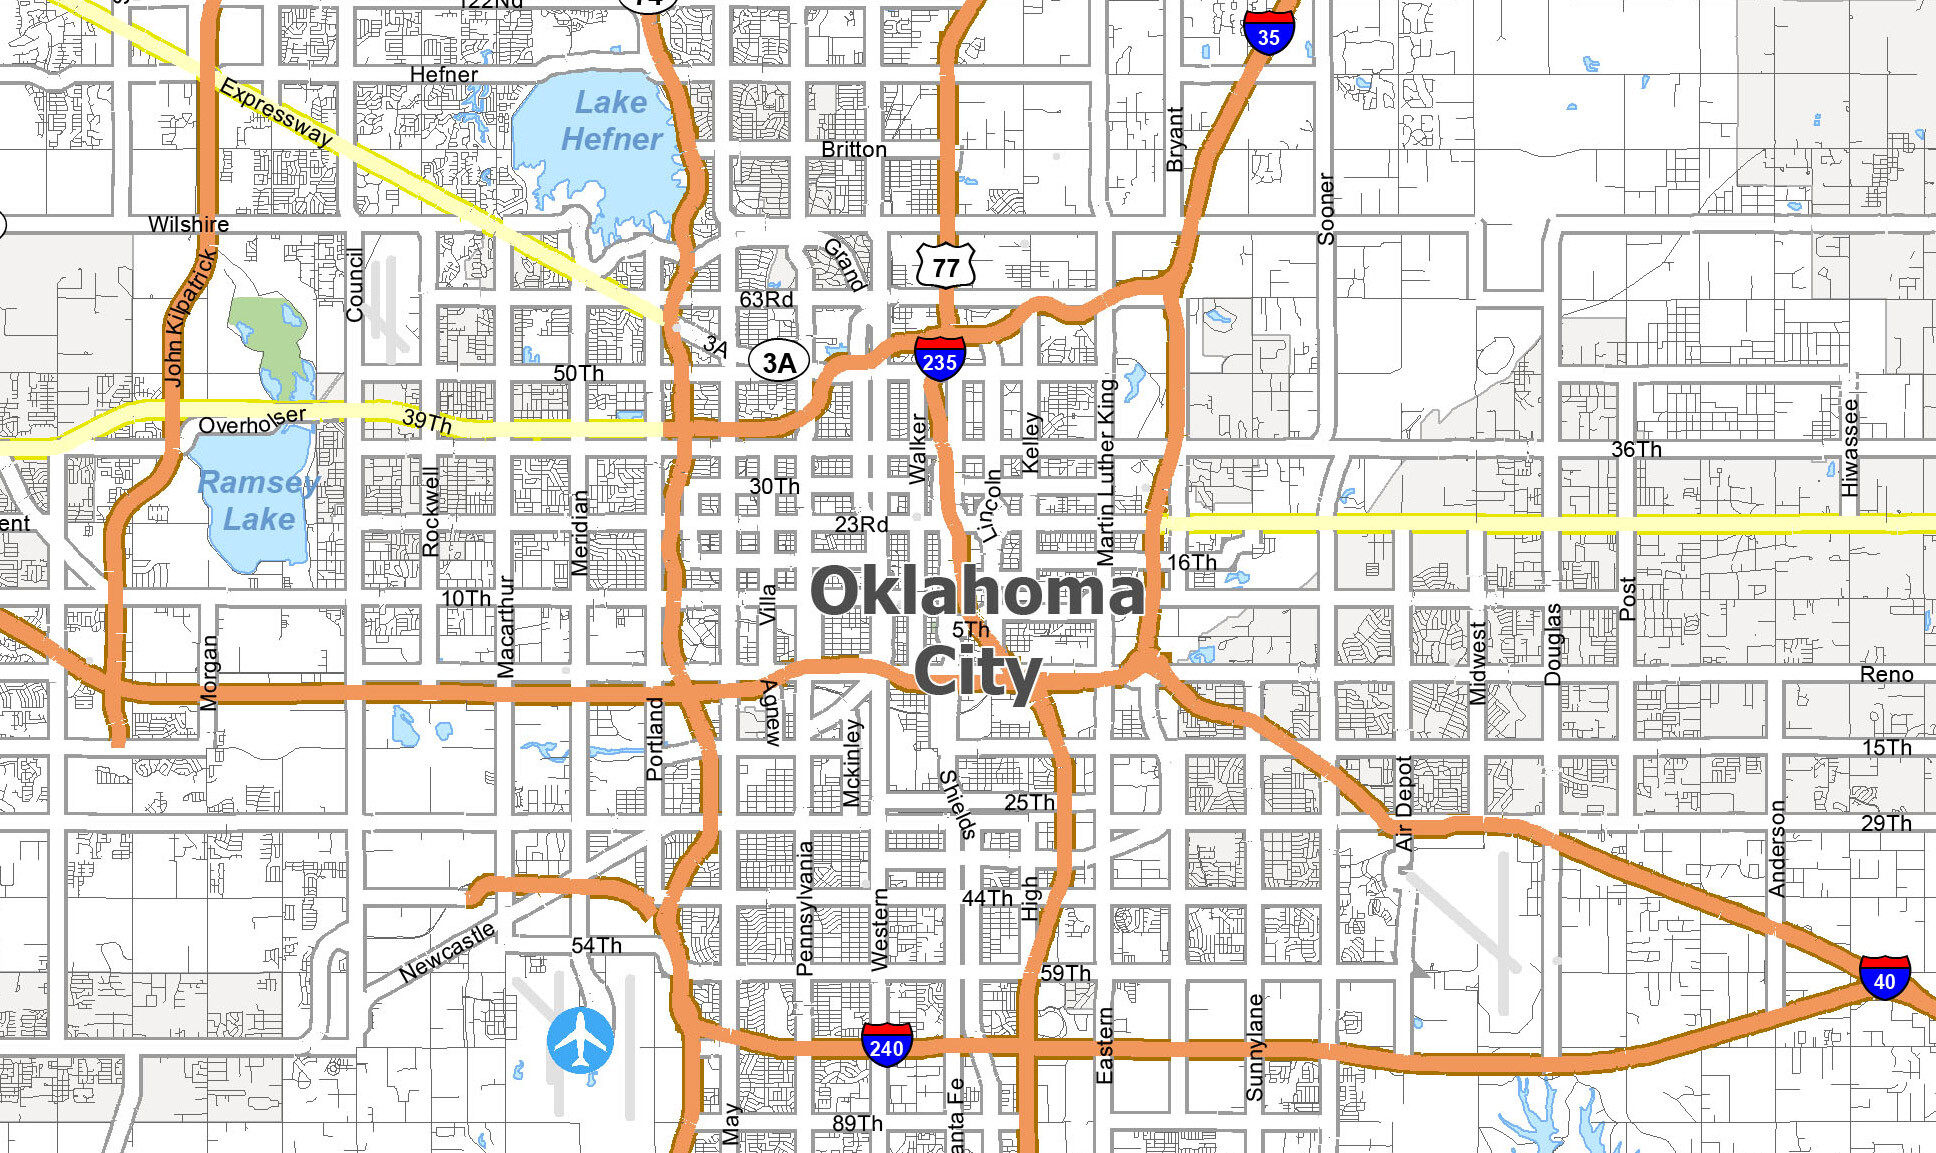 Printable Oklahoma City Map